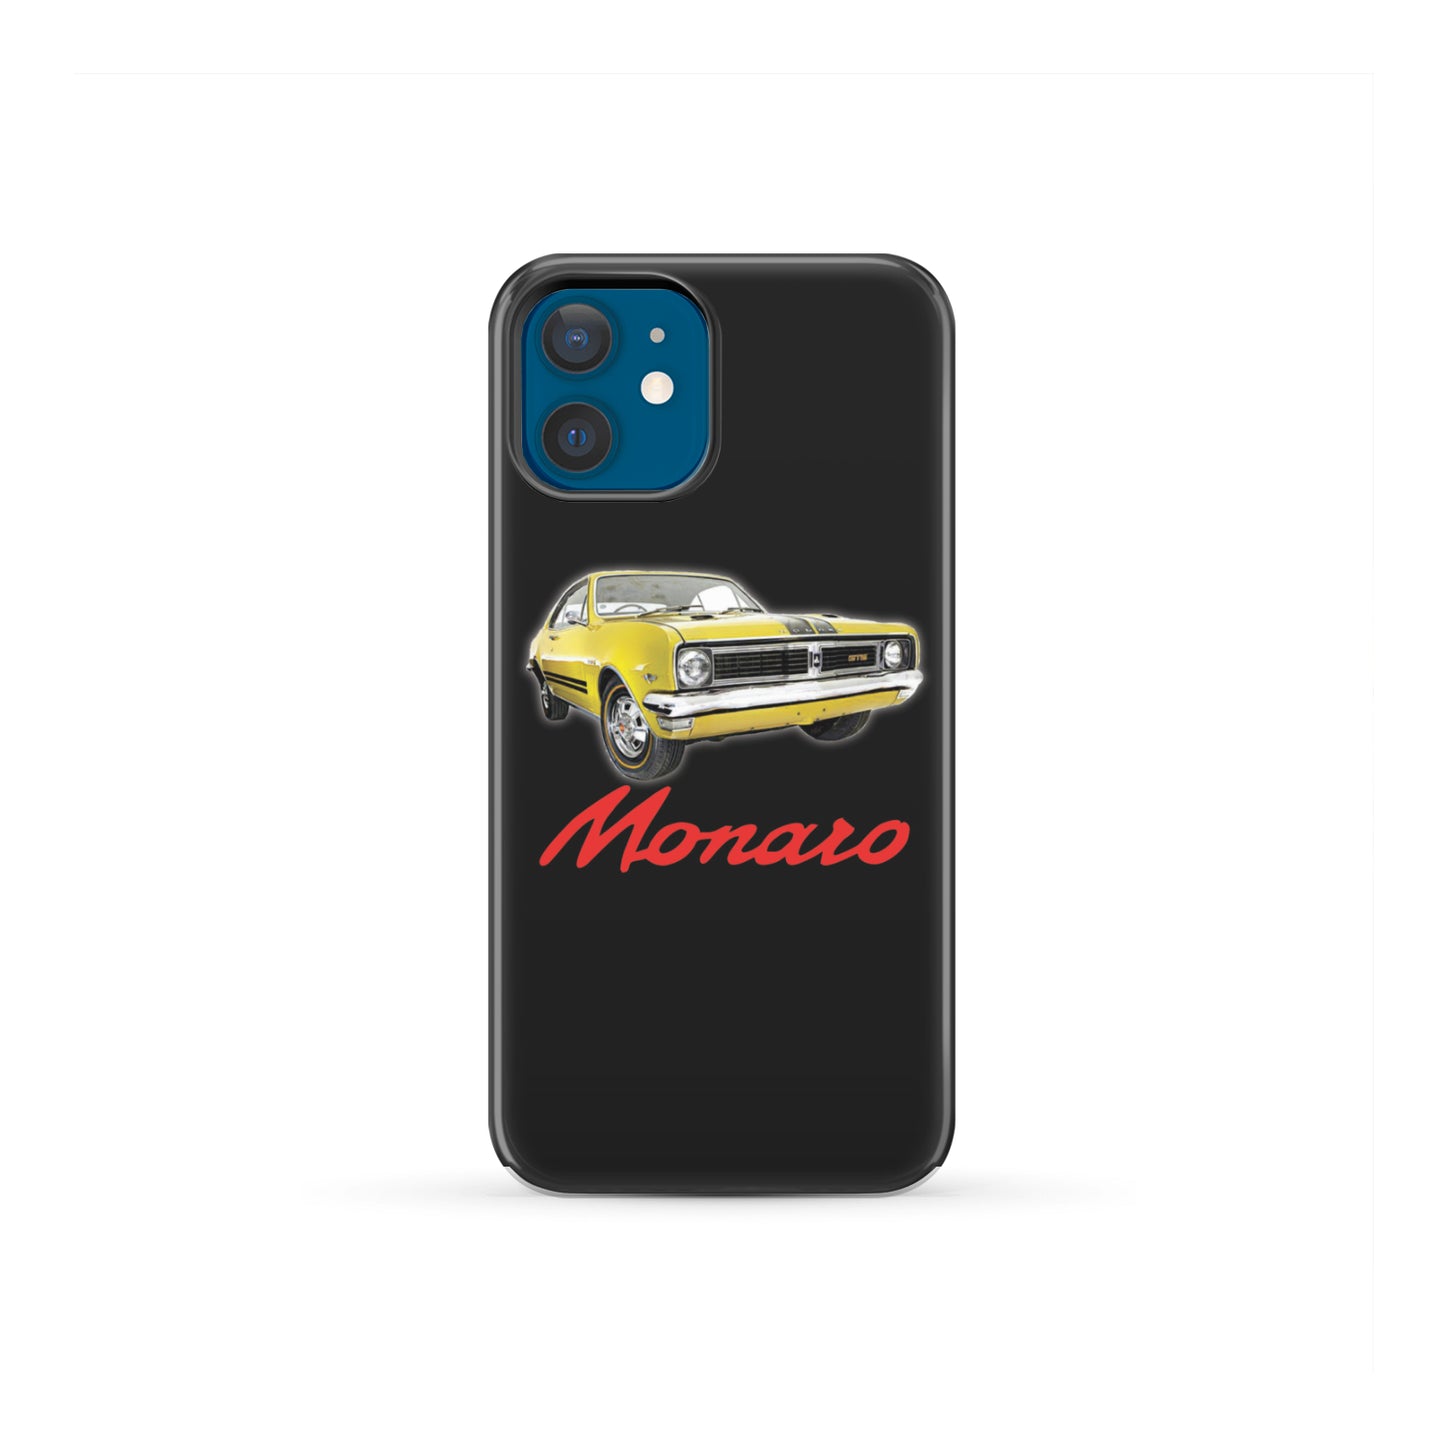 HT Monaro phone case